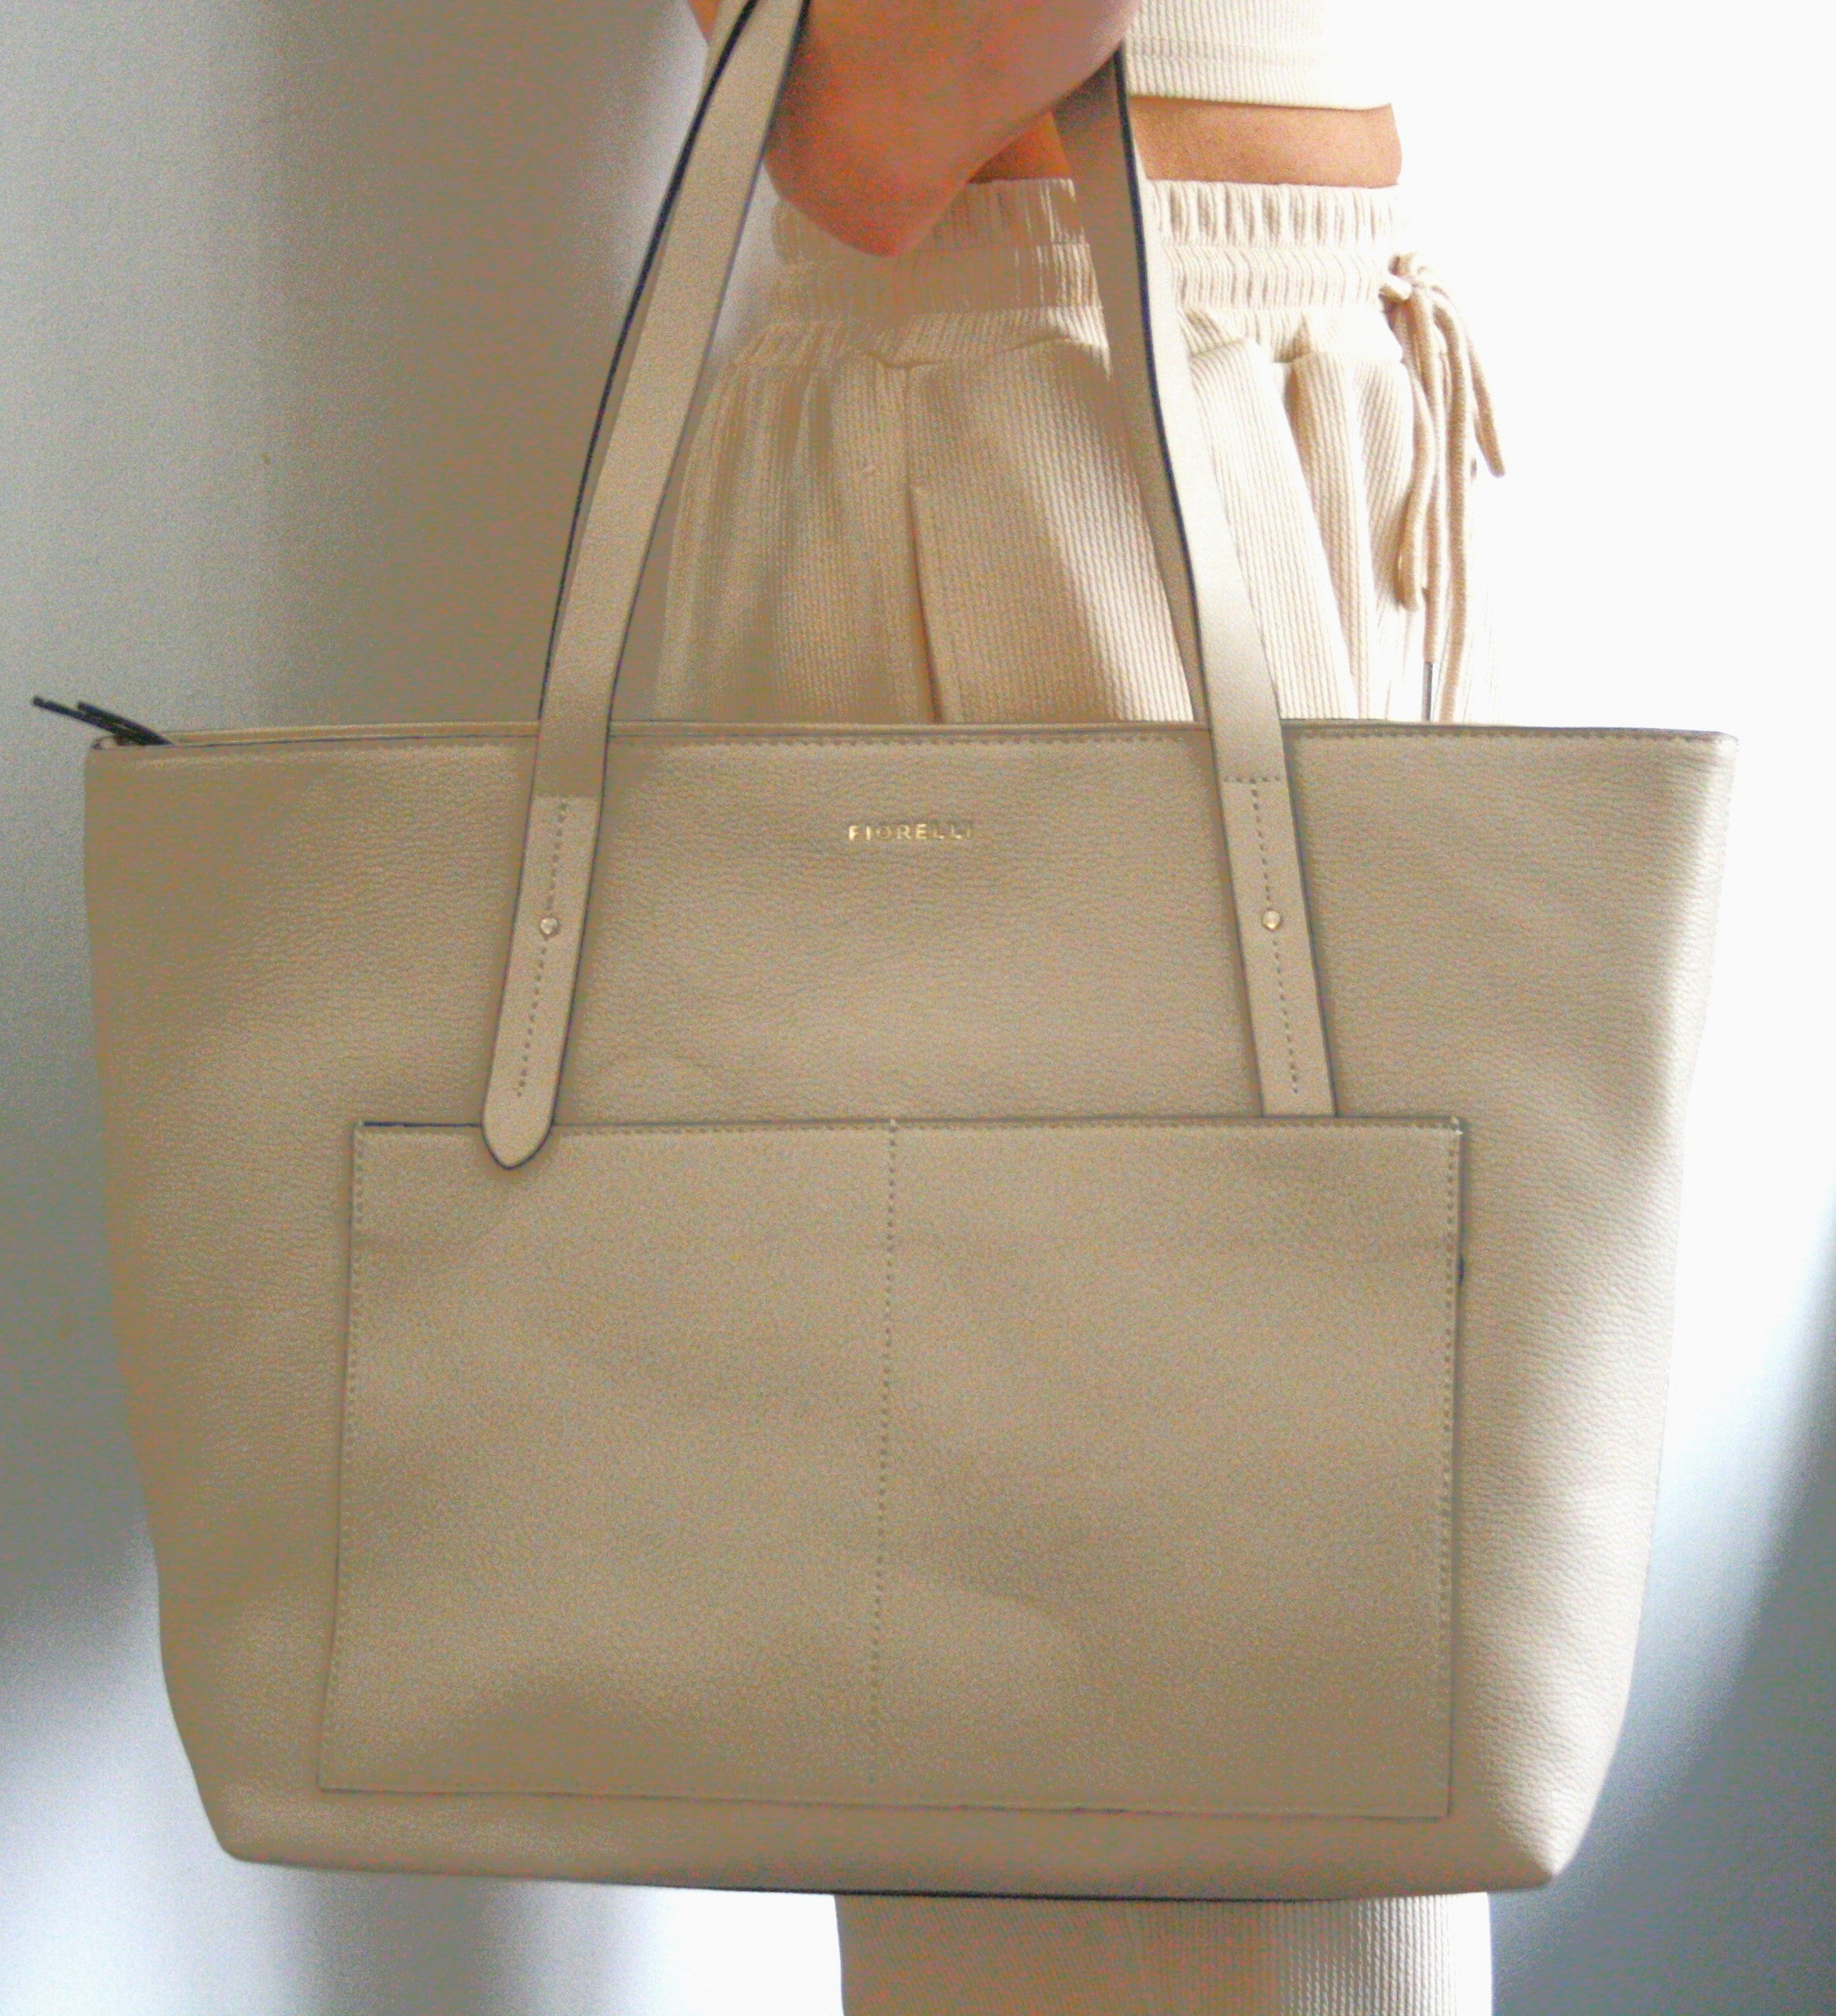 Furla, Bags, Furla Ariana Medium Leather Zip Tote Bag